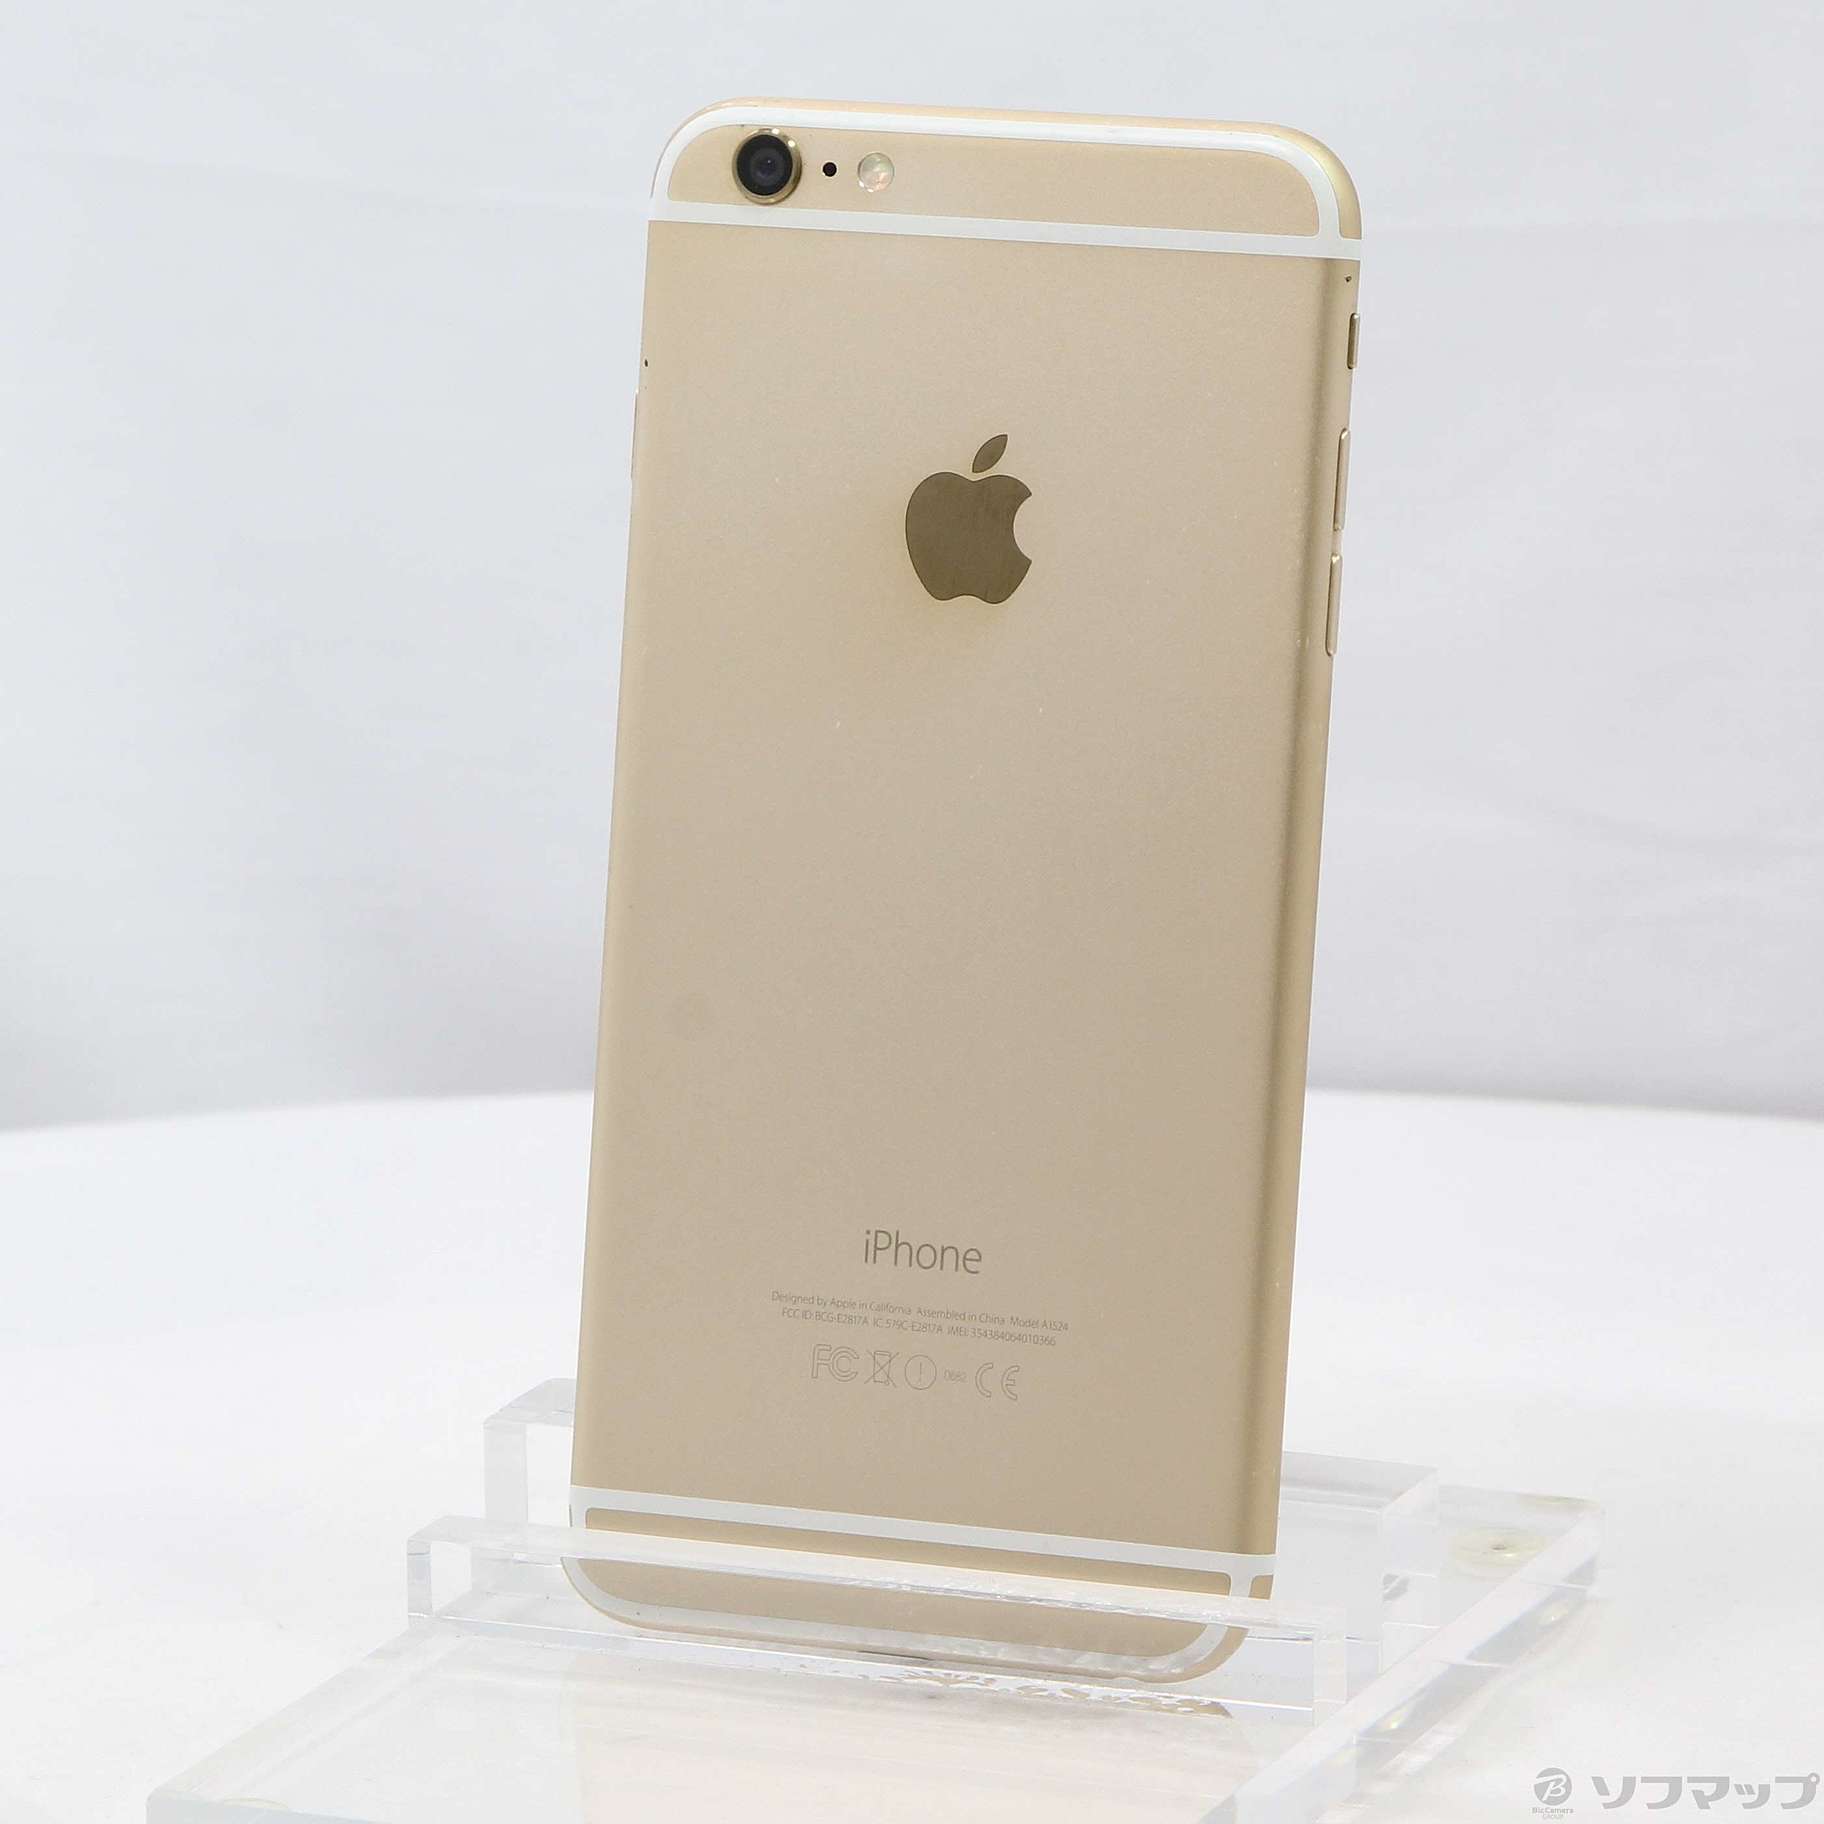 スマートフォン/携帯電話iPhone 6 Gold 16 GB gold